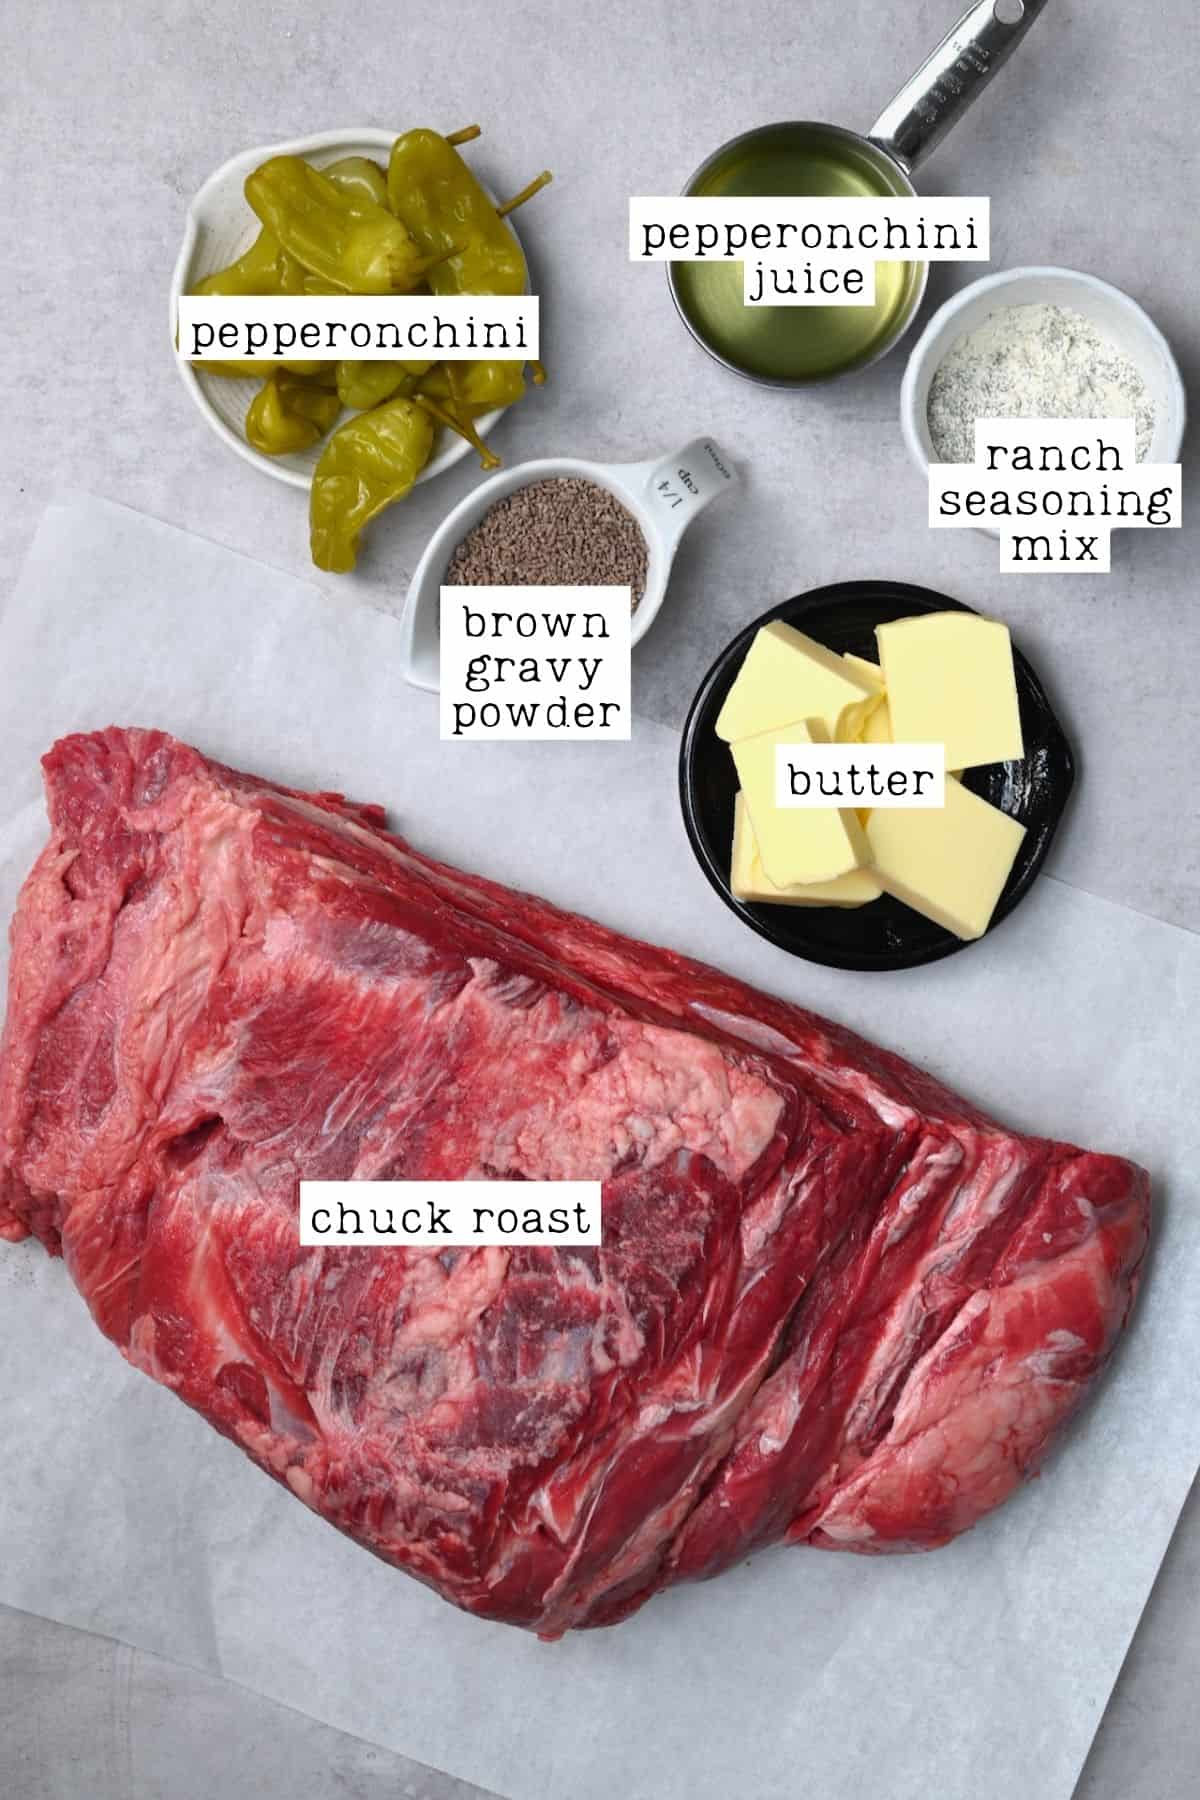 Ingredients for Mississippi pot roast